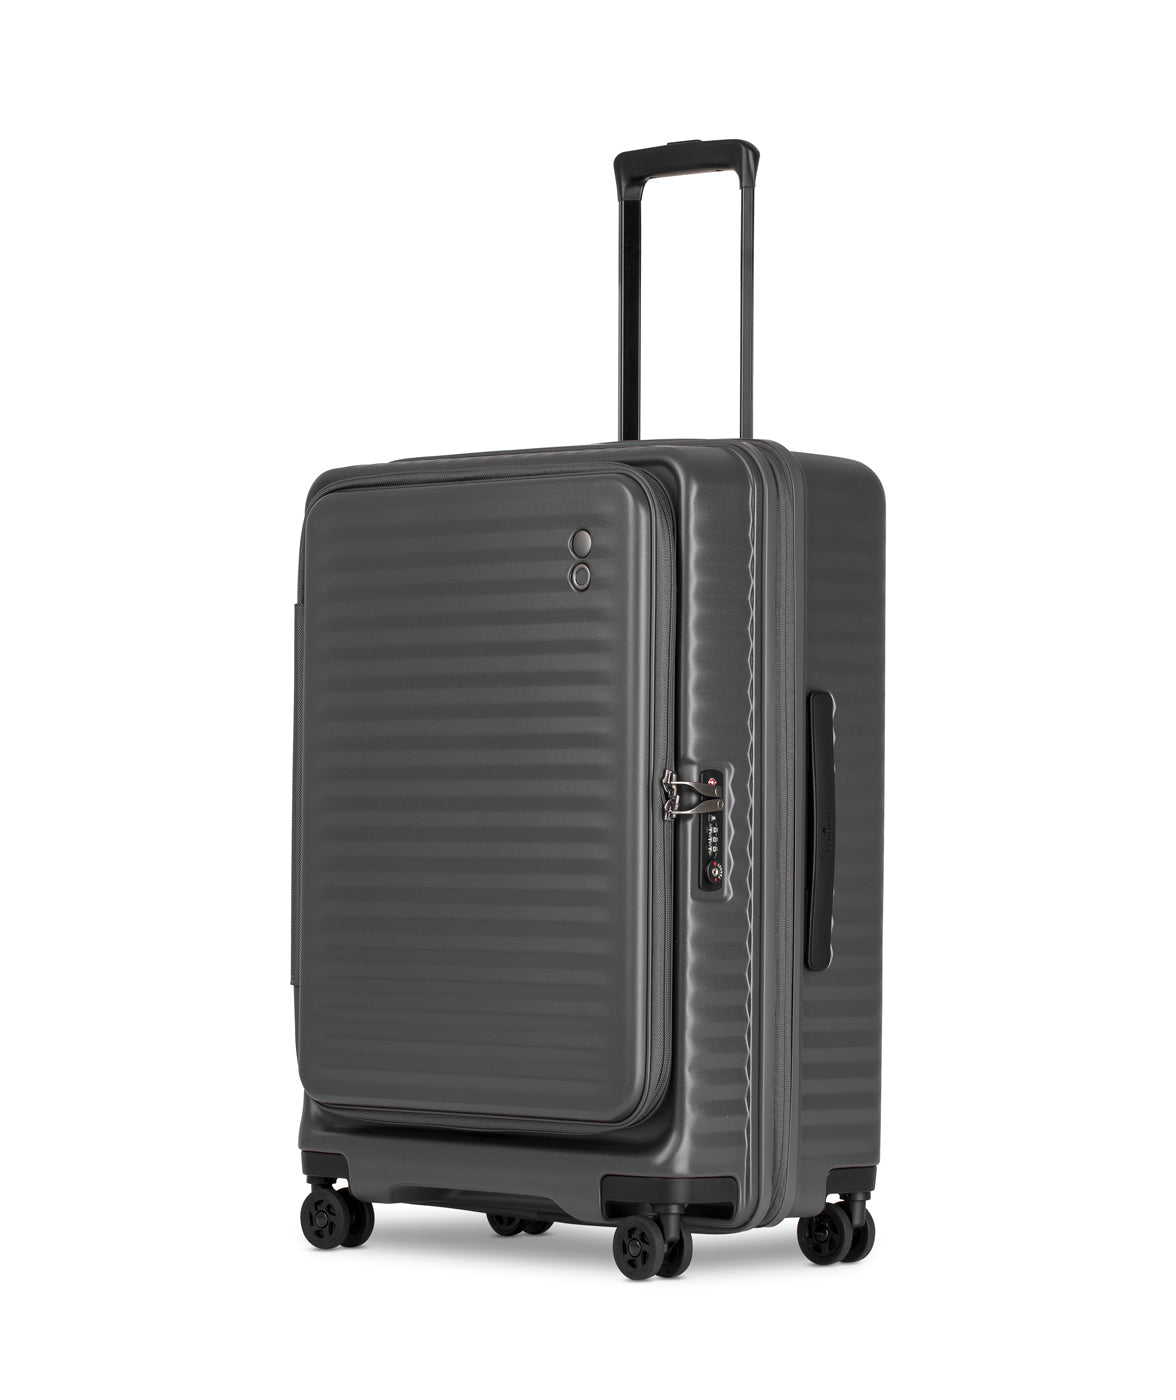 Echolac Celestra Suitcase, Medium 65 cm, Dark Grey Seite